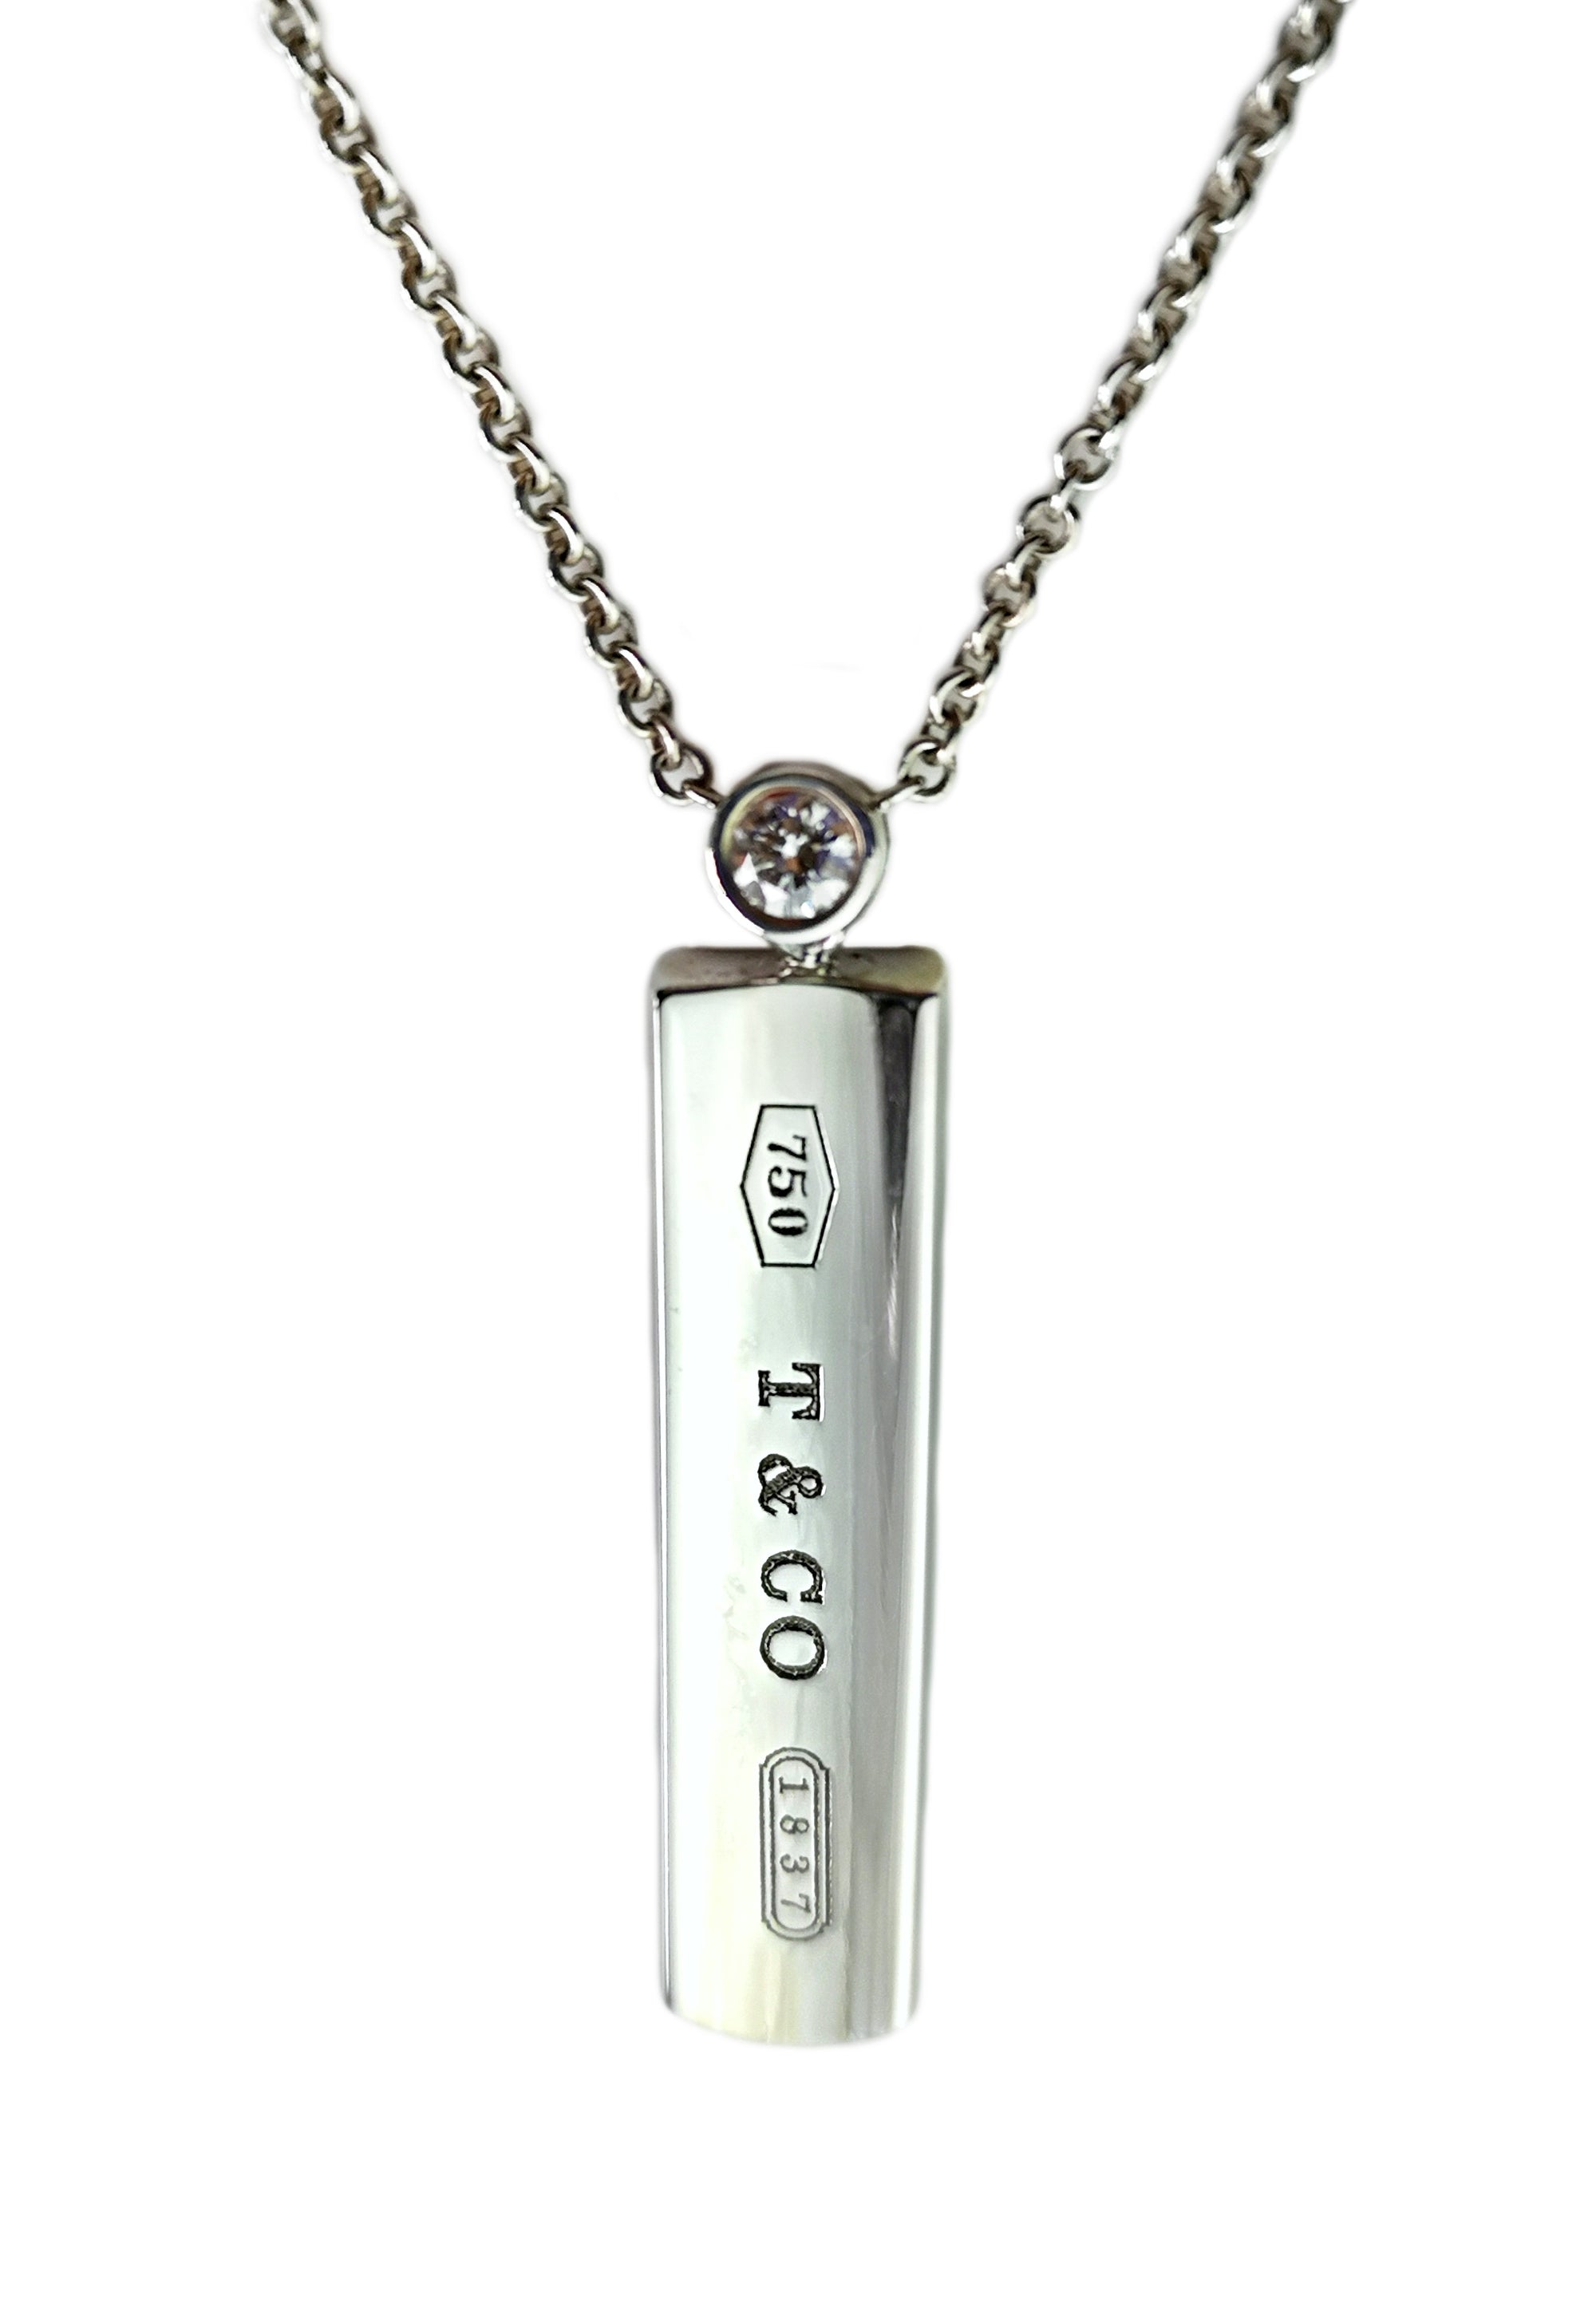 Tiffany & Co. 1837 Diamond Pendant Necklace, 18 inch chain